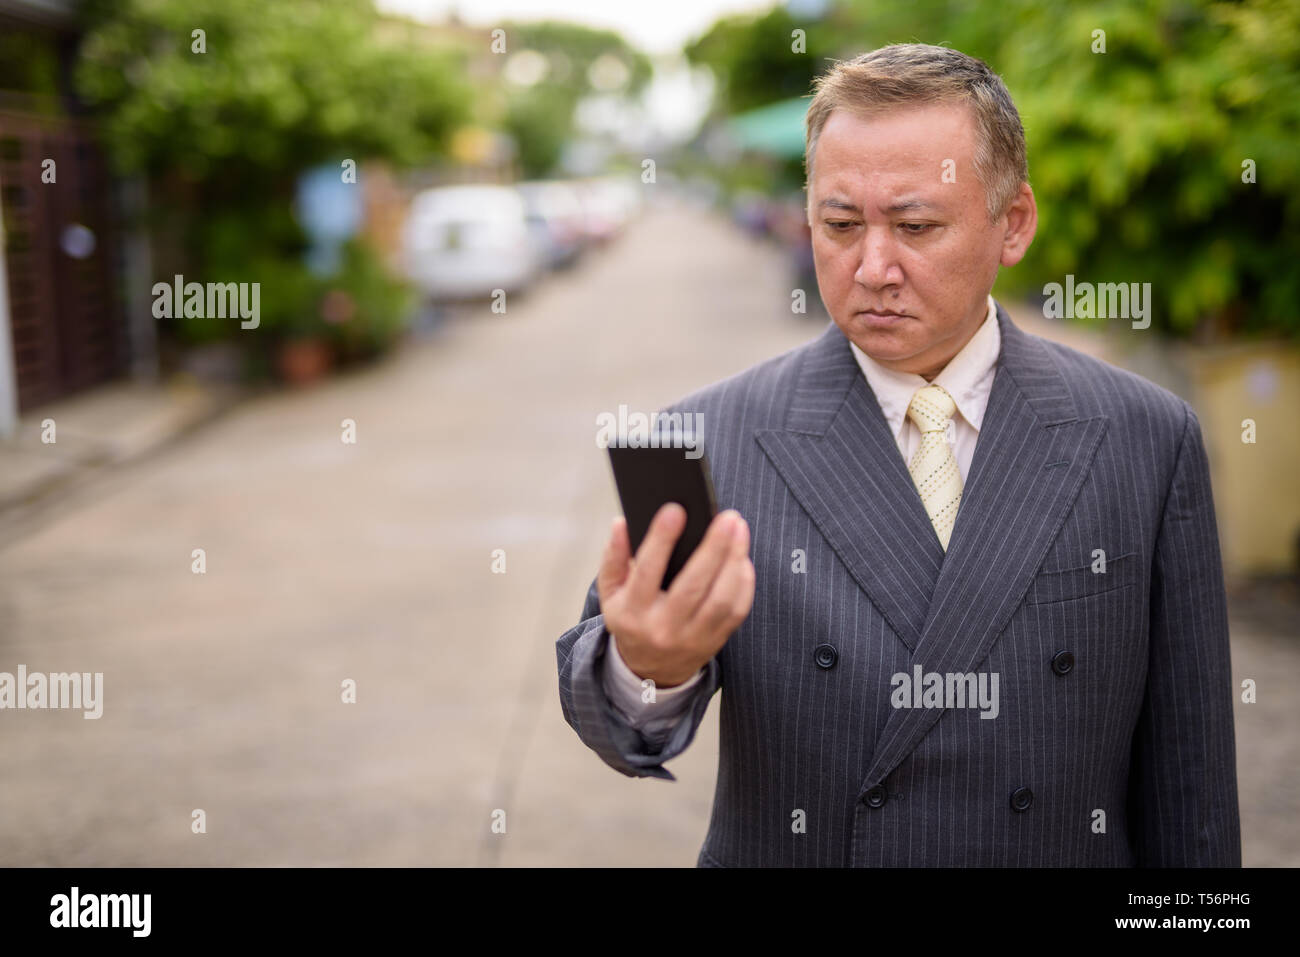 Mature Asian businessman using mobile phone dans les rues outdo Banque D'Images